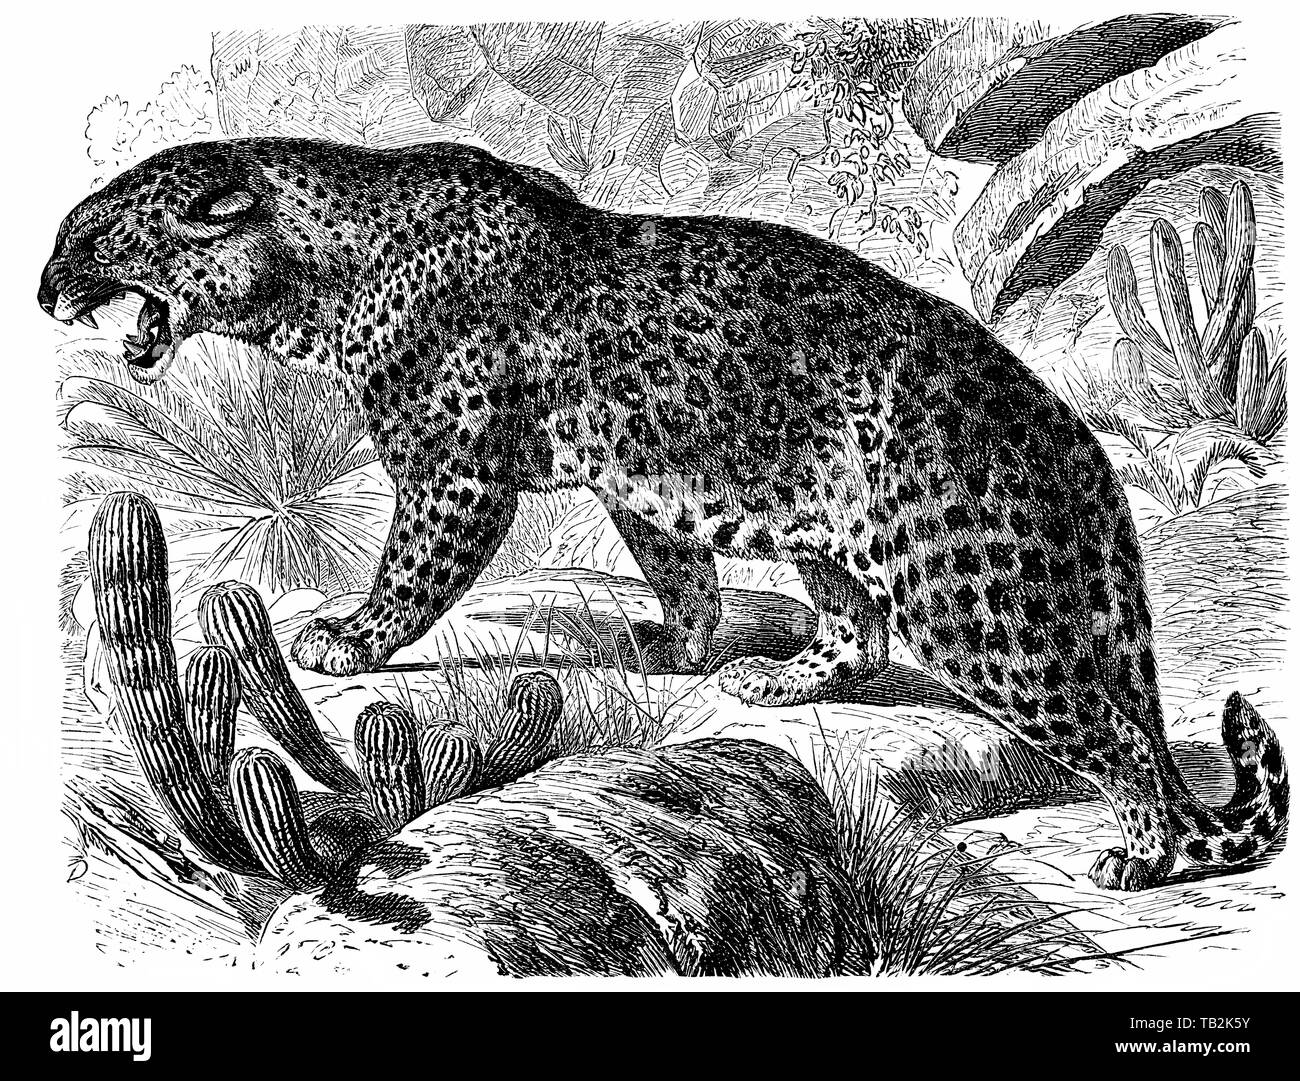 Historische, zeichnerische Darstellung, Pantherkatze, Großkatze, Leopard (Panthera pardus) , 19. Jahrhundert, aus Meyers Konversations-Lexikon, 1889 Stock Photo